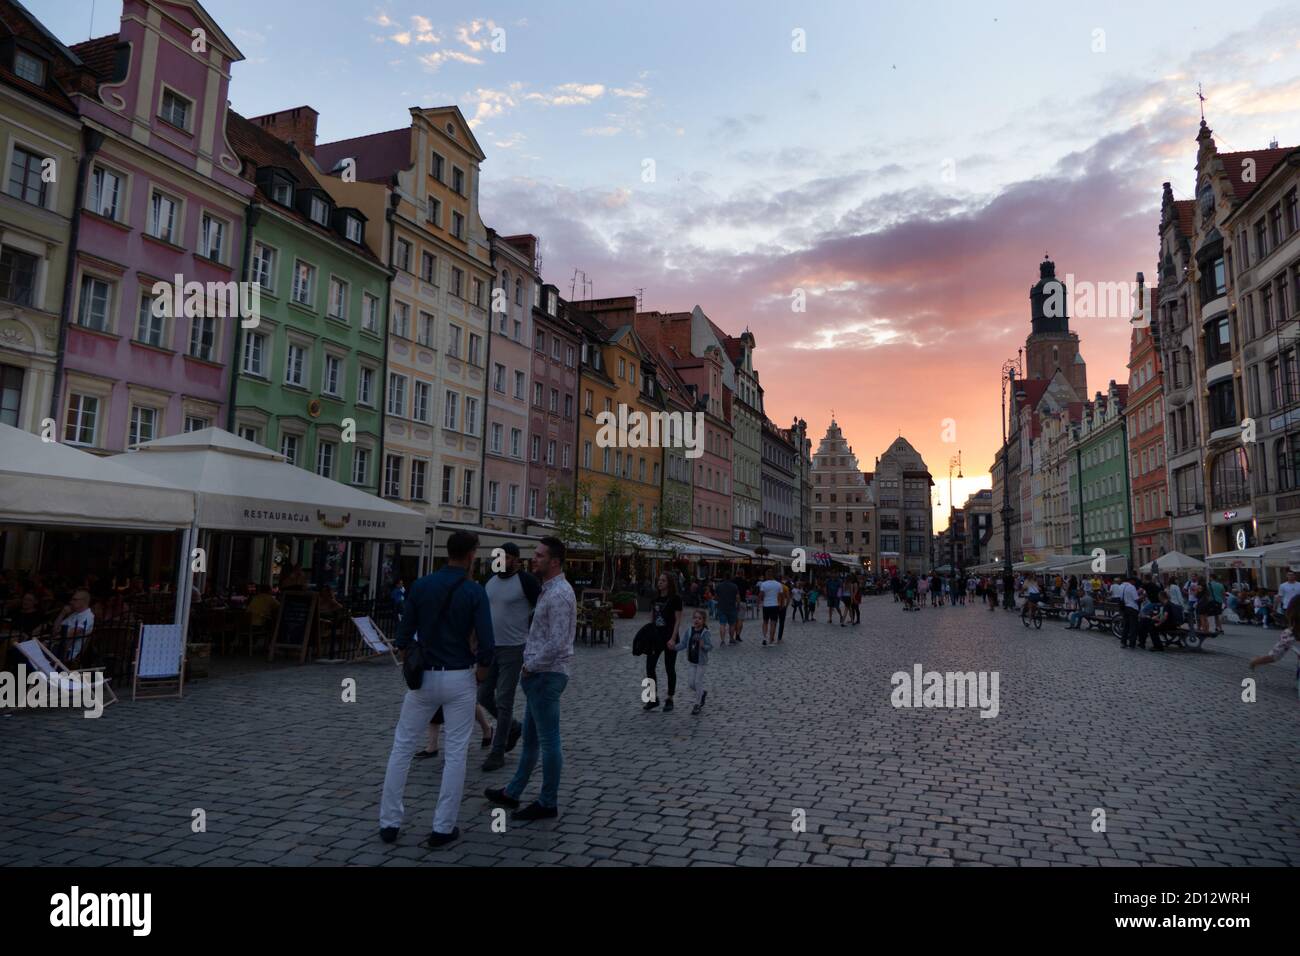 Vista della Piazza del mercato nella città vecchia di Wroclaw (Breslavia), Polonia, Europa con i turisti a piedi. Punto di riferimento polacco con edifici e case tradizionali Foto Stock